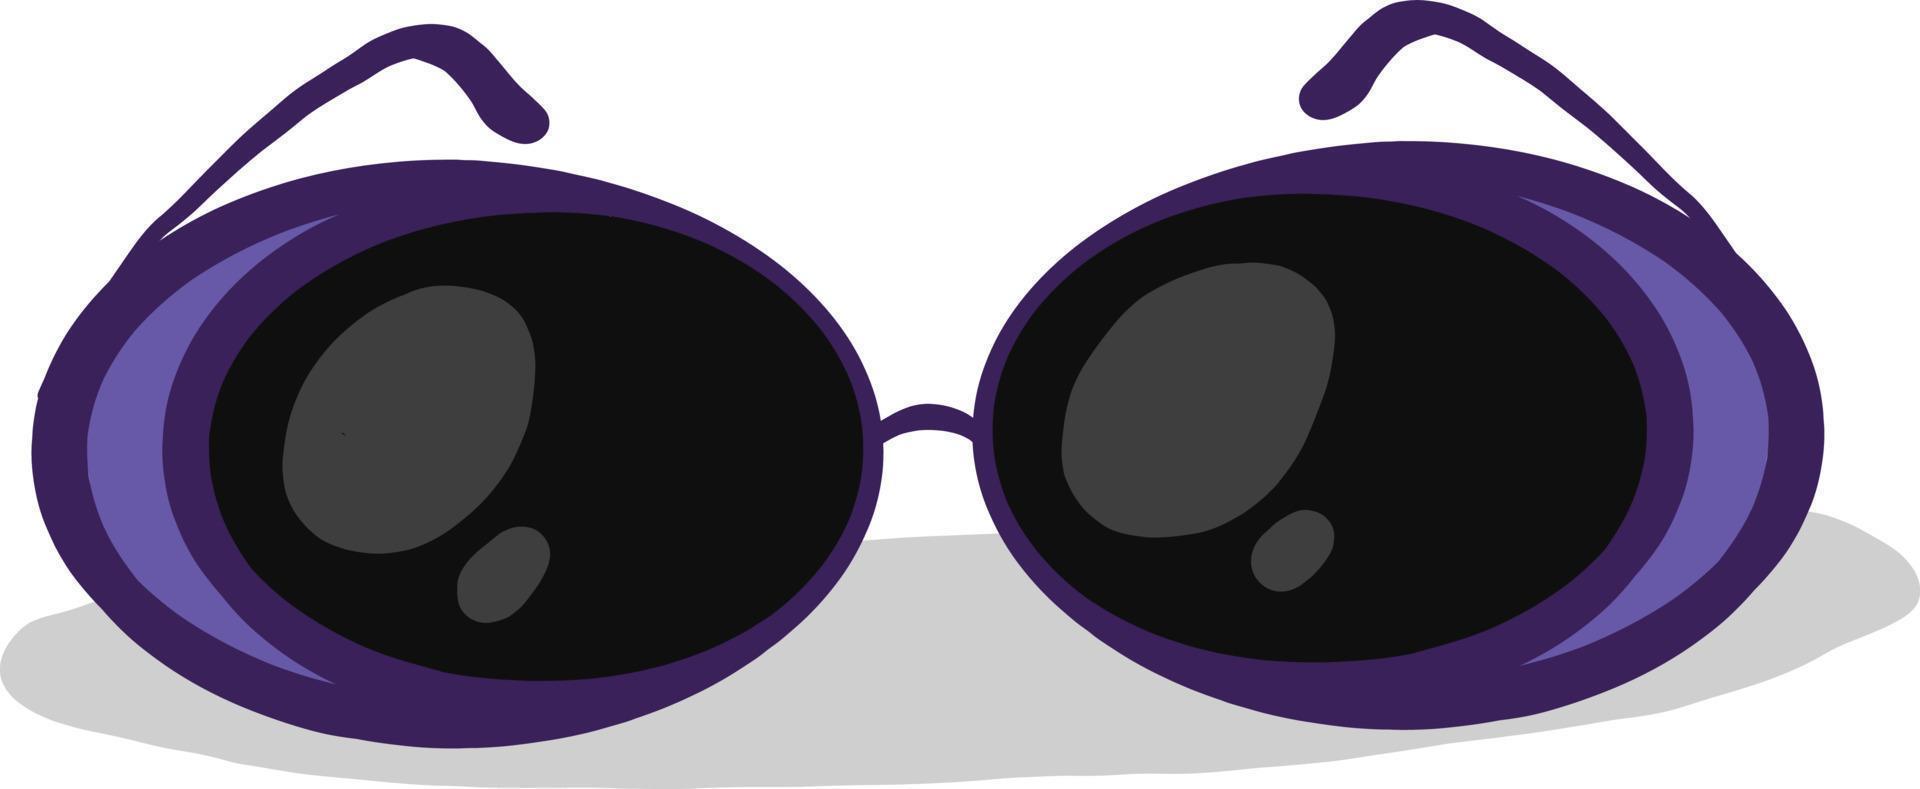 Cool violeta gafas de sol, ilustración, vector sobre fondo blanco.